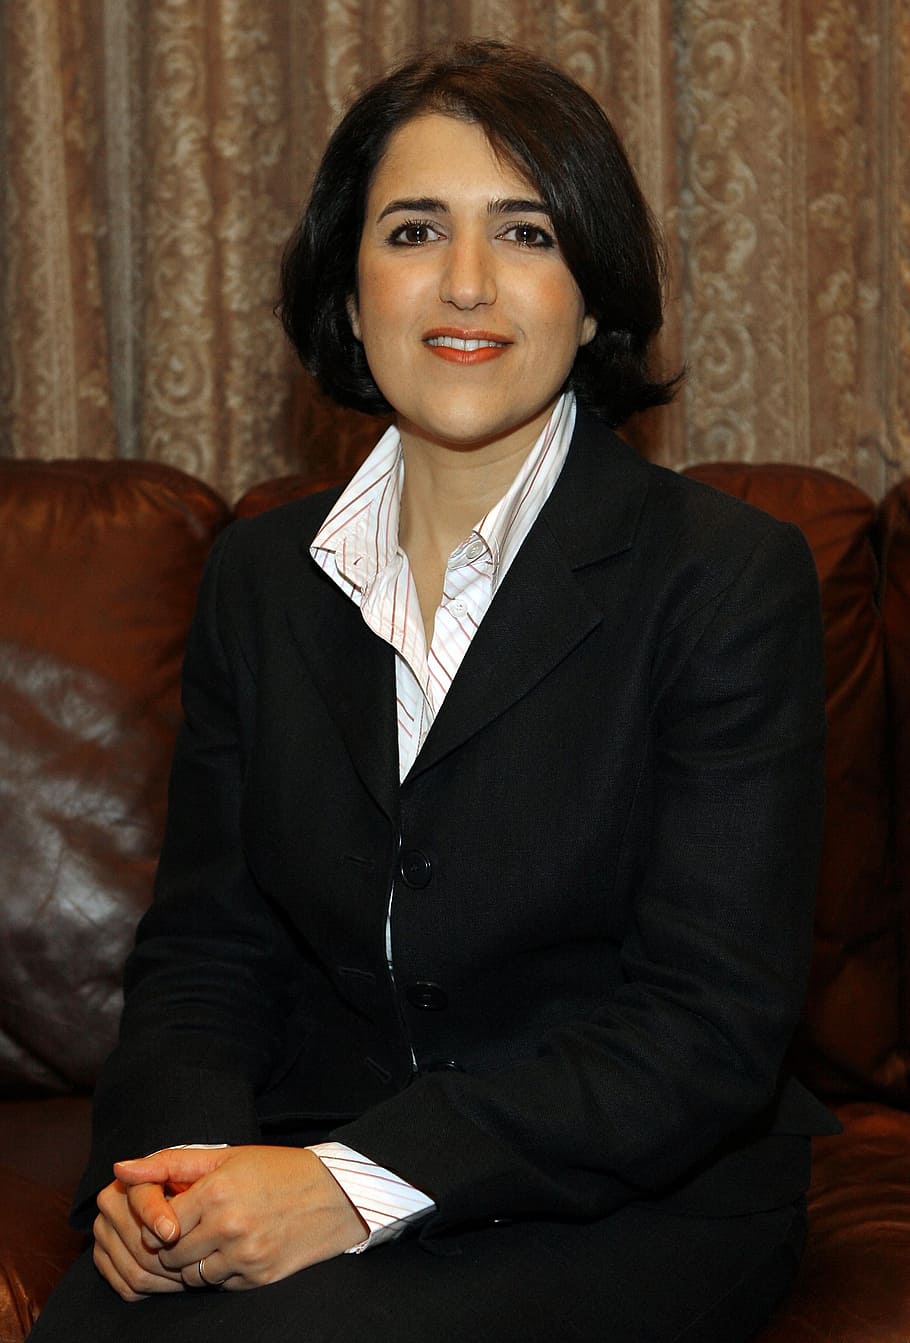 bayan sami abdul rahman, kurdistan, regional, gobierno, representante, político, política, mirando a la cámara, en el interior, vista frontal